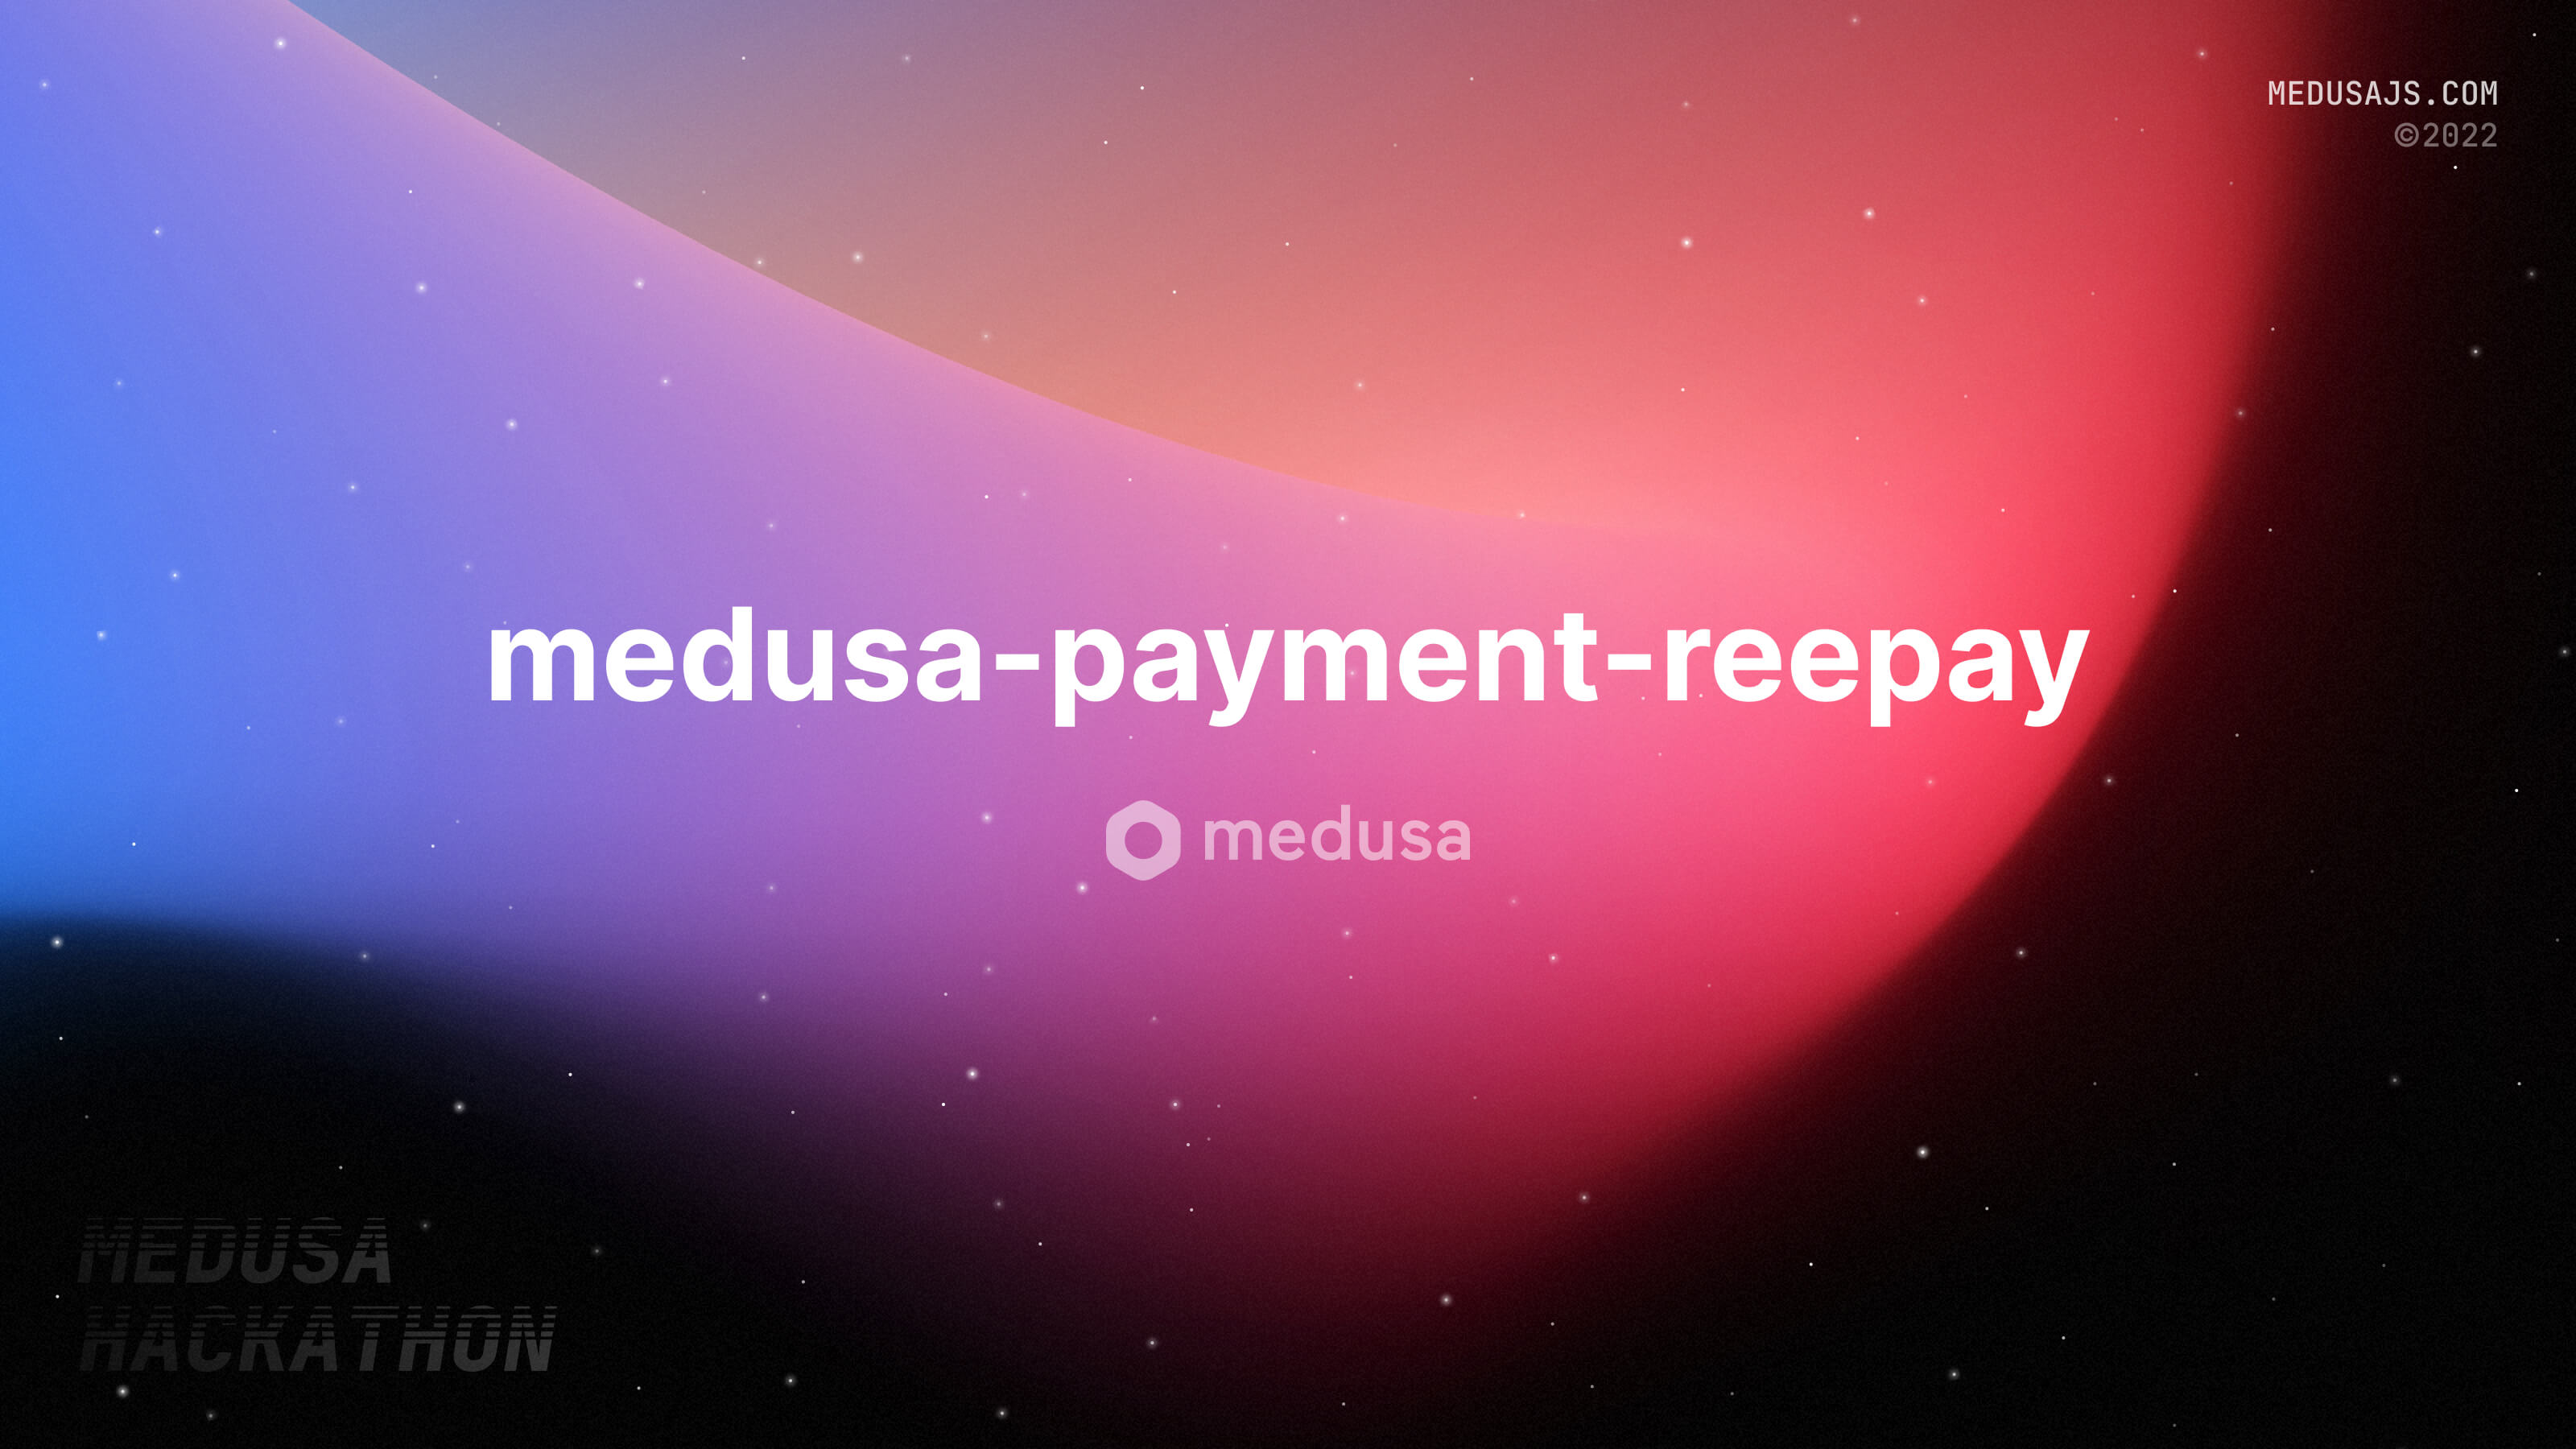 Medusa Hackathon 2022